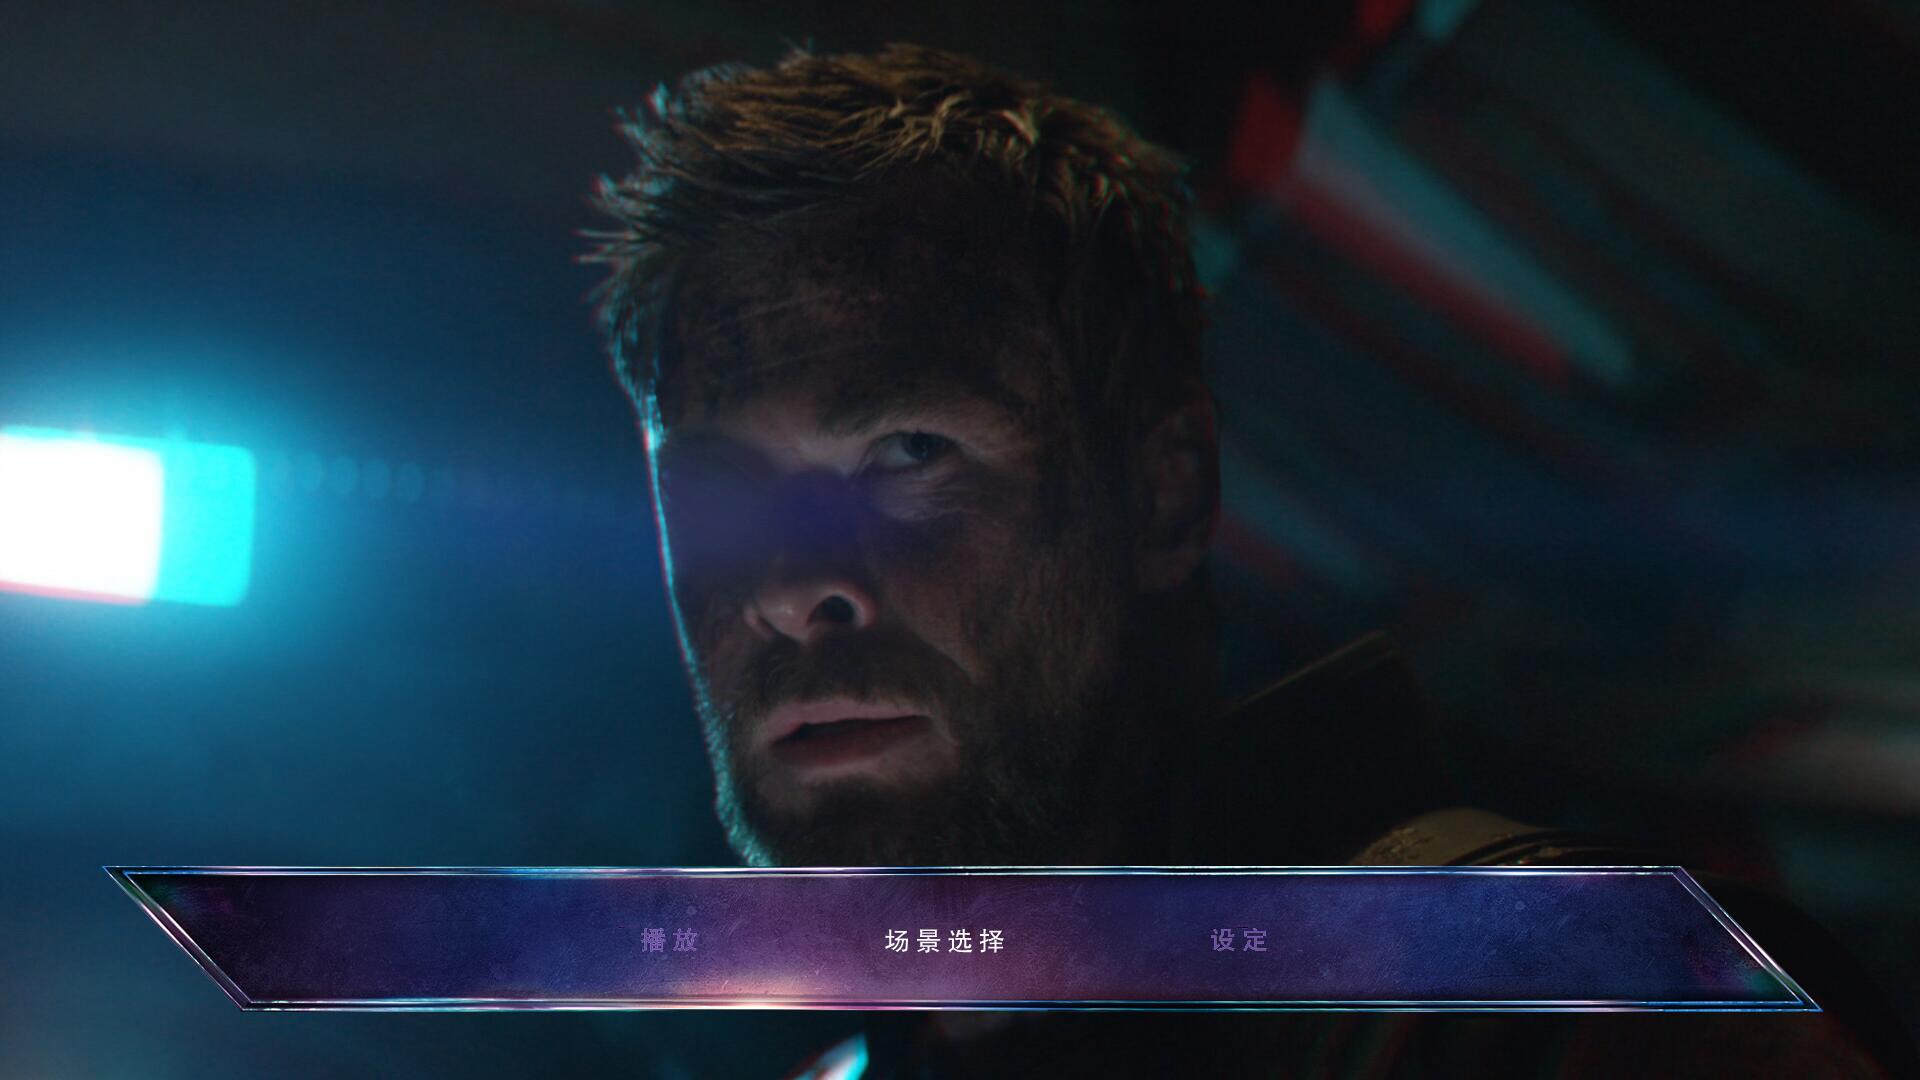 复仇者联盟3：无限战争【3D原盘DIY次世代国语+简繁/双语动态特效字幕+菜单汉化修改】 Avengers Infinity War 2018 1080p 3D Blu-ray AVC DTS-HD MA 7.1-Huan@HDSky [50.95 GB]-2.jpg